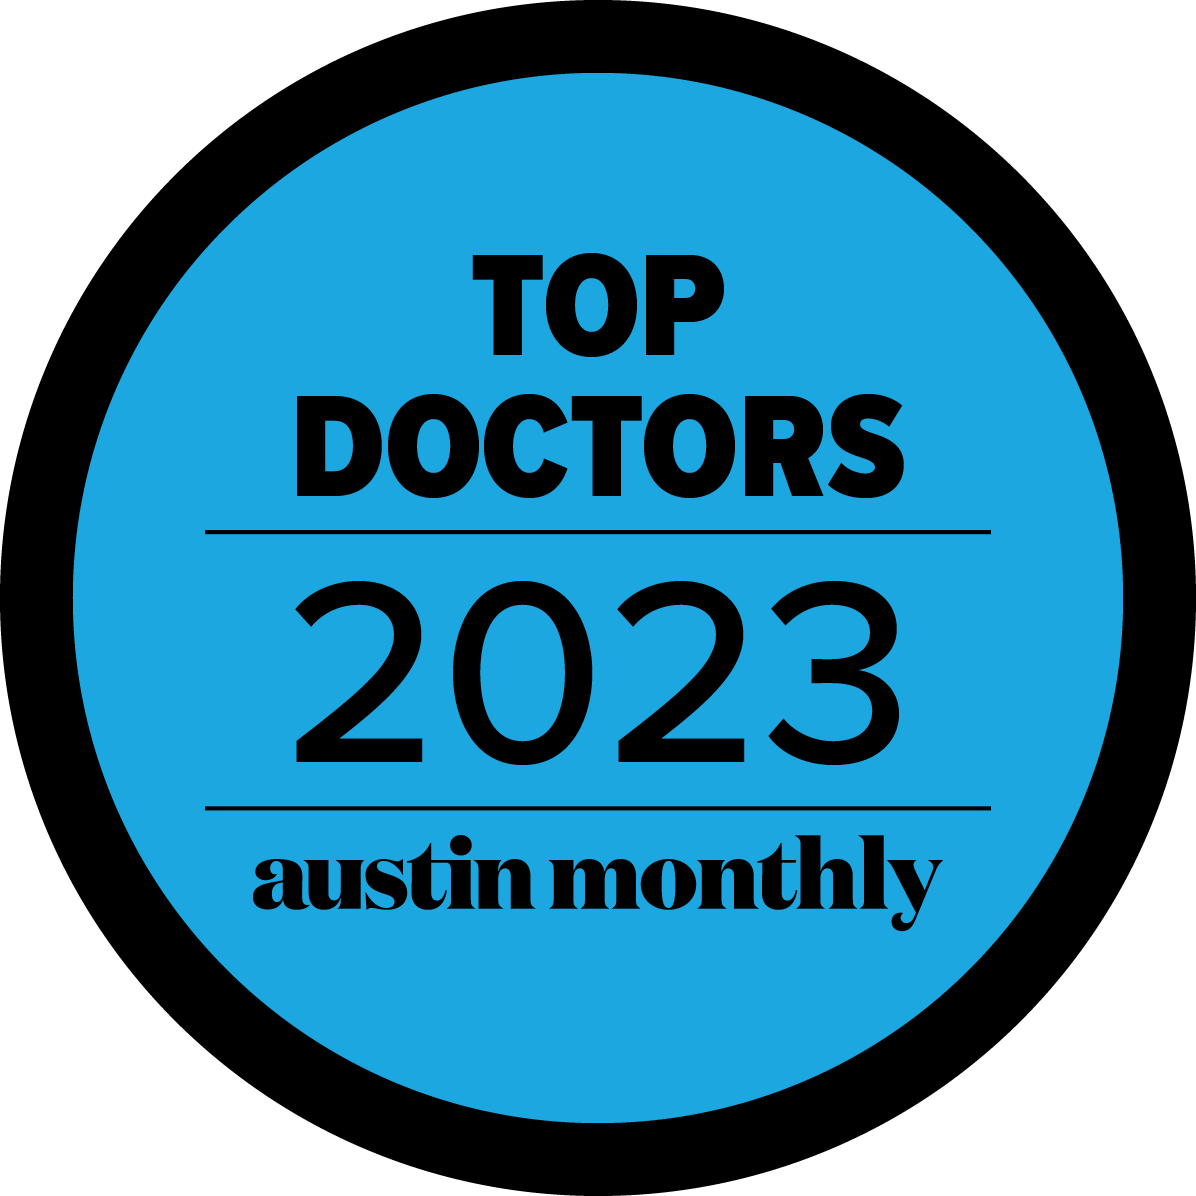 Top Doctors Austin Monthly